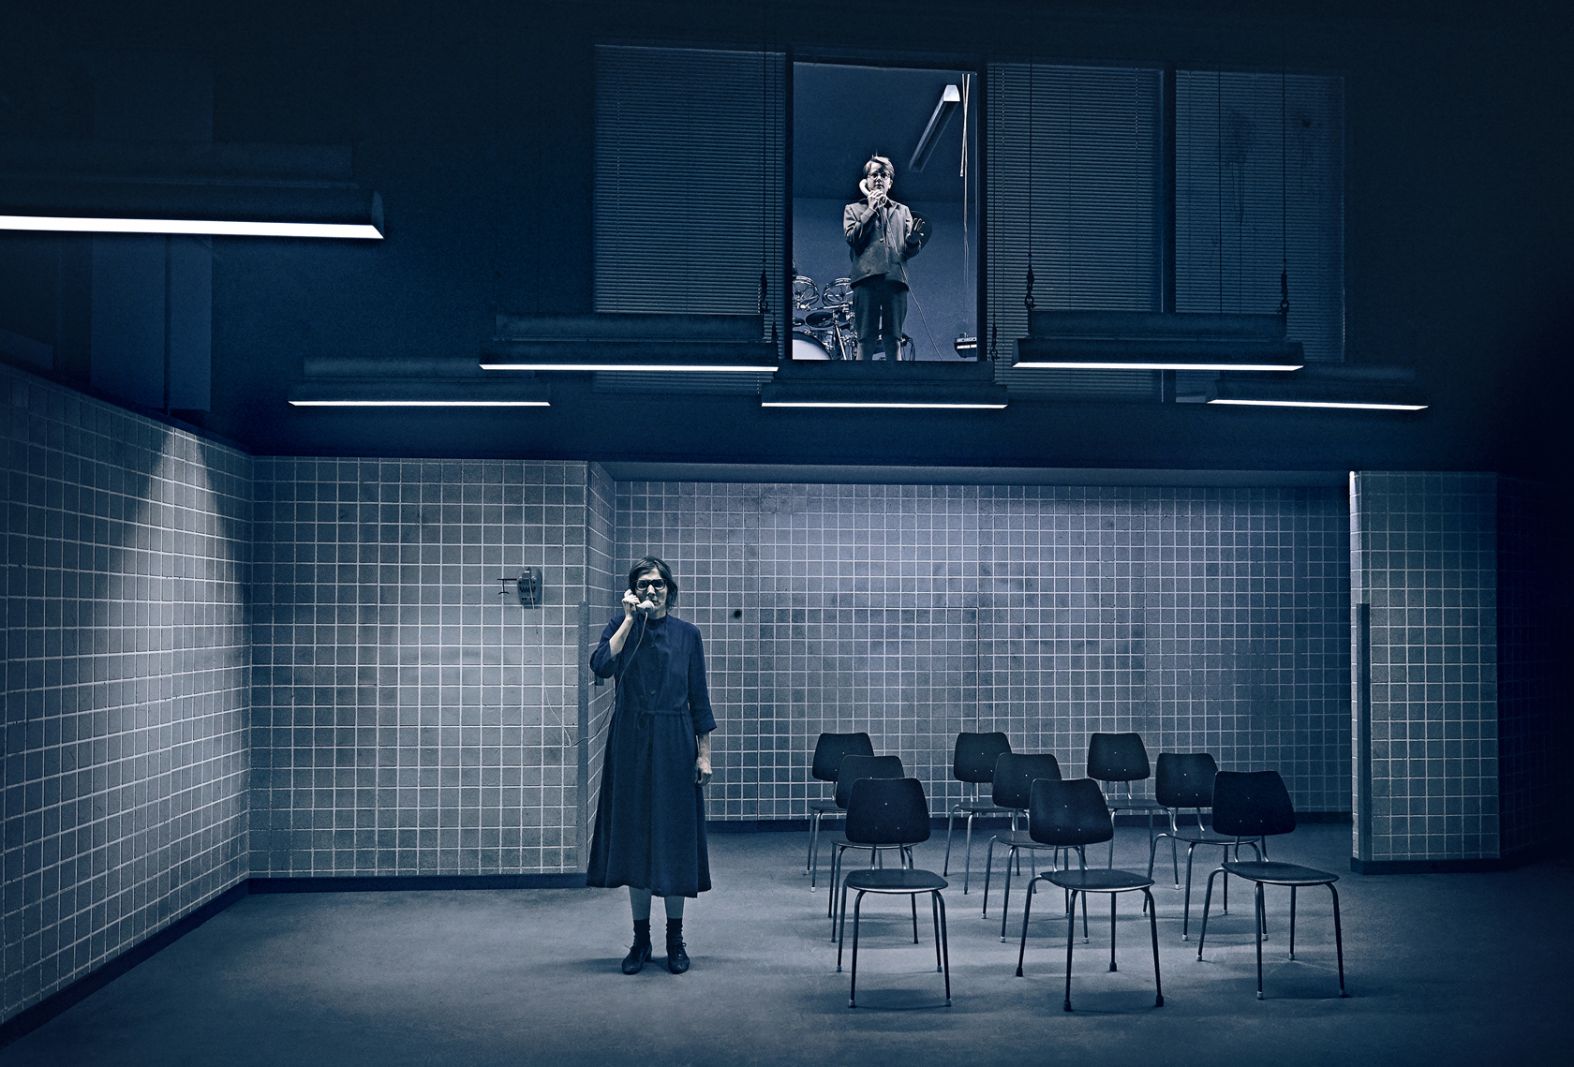 Dancer in the Dark i en avantgarde lydkulisse</br>Morten Riis og Marie Koldkjær Højlund har gjort meget ud af, at forestillingens lydunivers består af lyde, som spilles på scenen - rigtig lyd, der opstår live. </br>Foto: PR-foto / Aarhus Teater - Emilie Therese